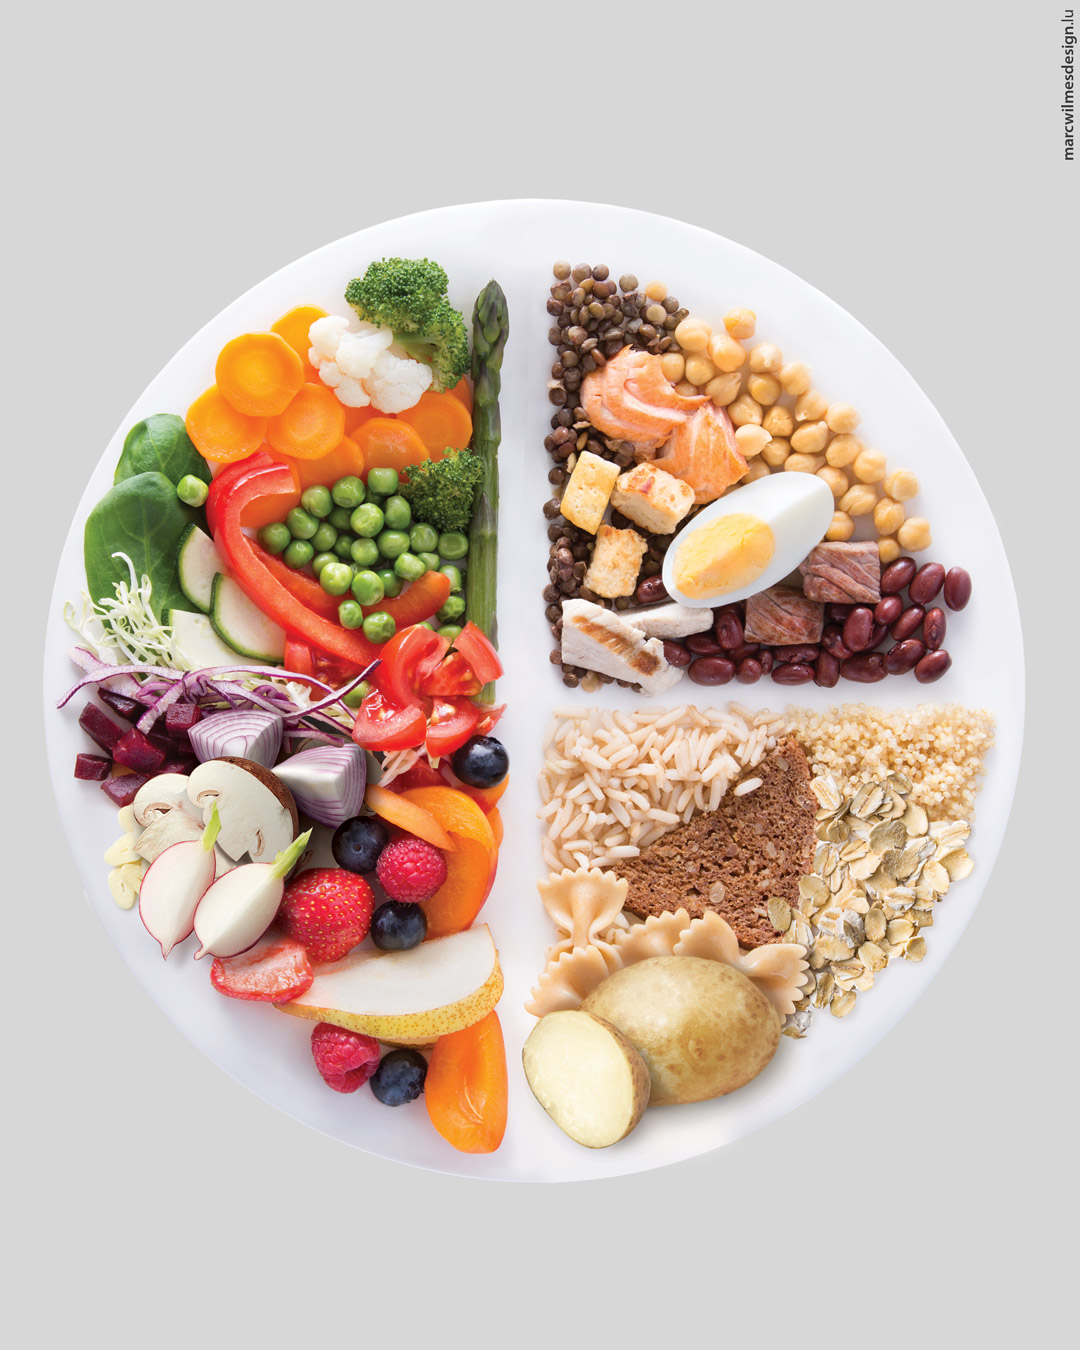 Une assiette équilibrée représente 1/2 assiette de légumes et/ou de fruits, 1/4 d'assiette de viande, volaille, poisson, oeufs, légumineuses, tofu et 1/4 d'assiette de féculents.